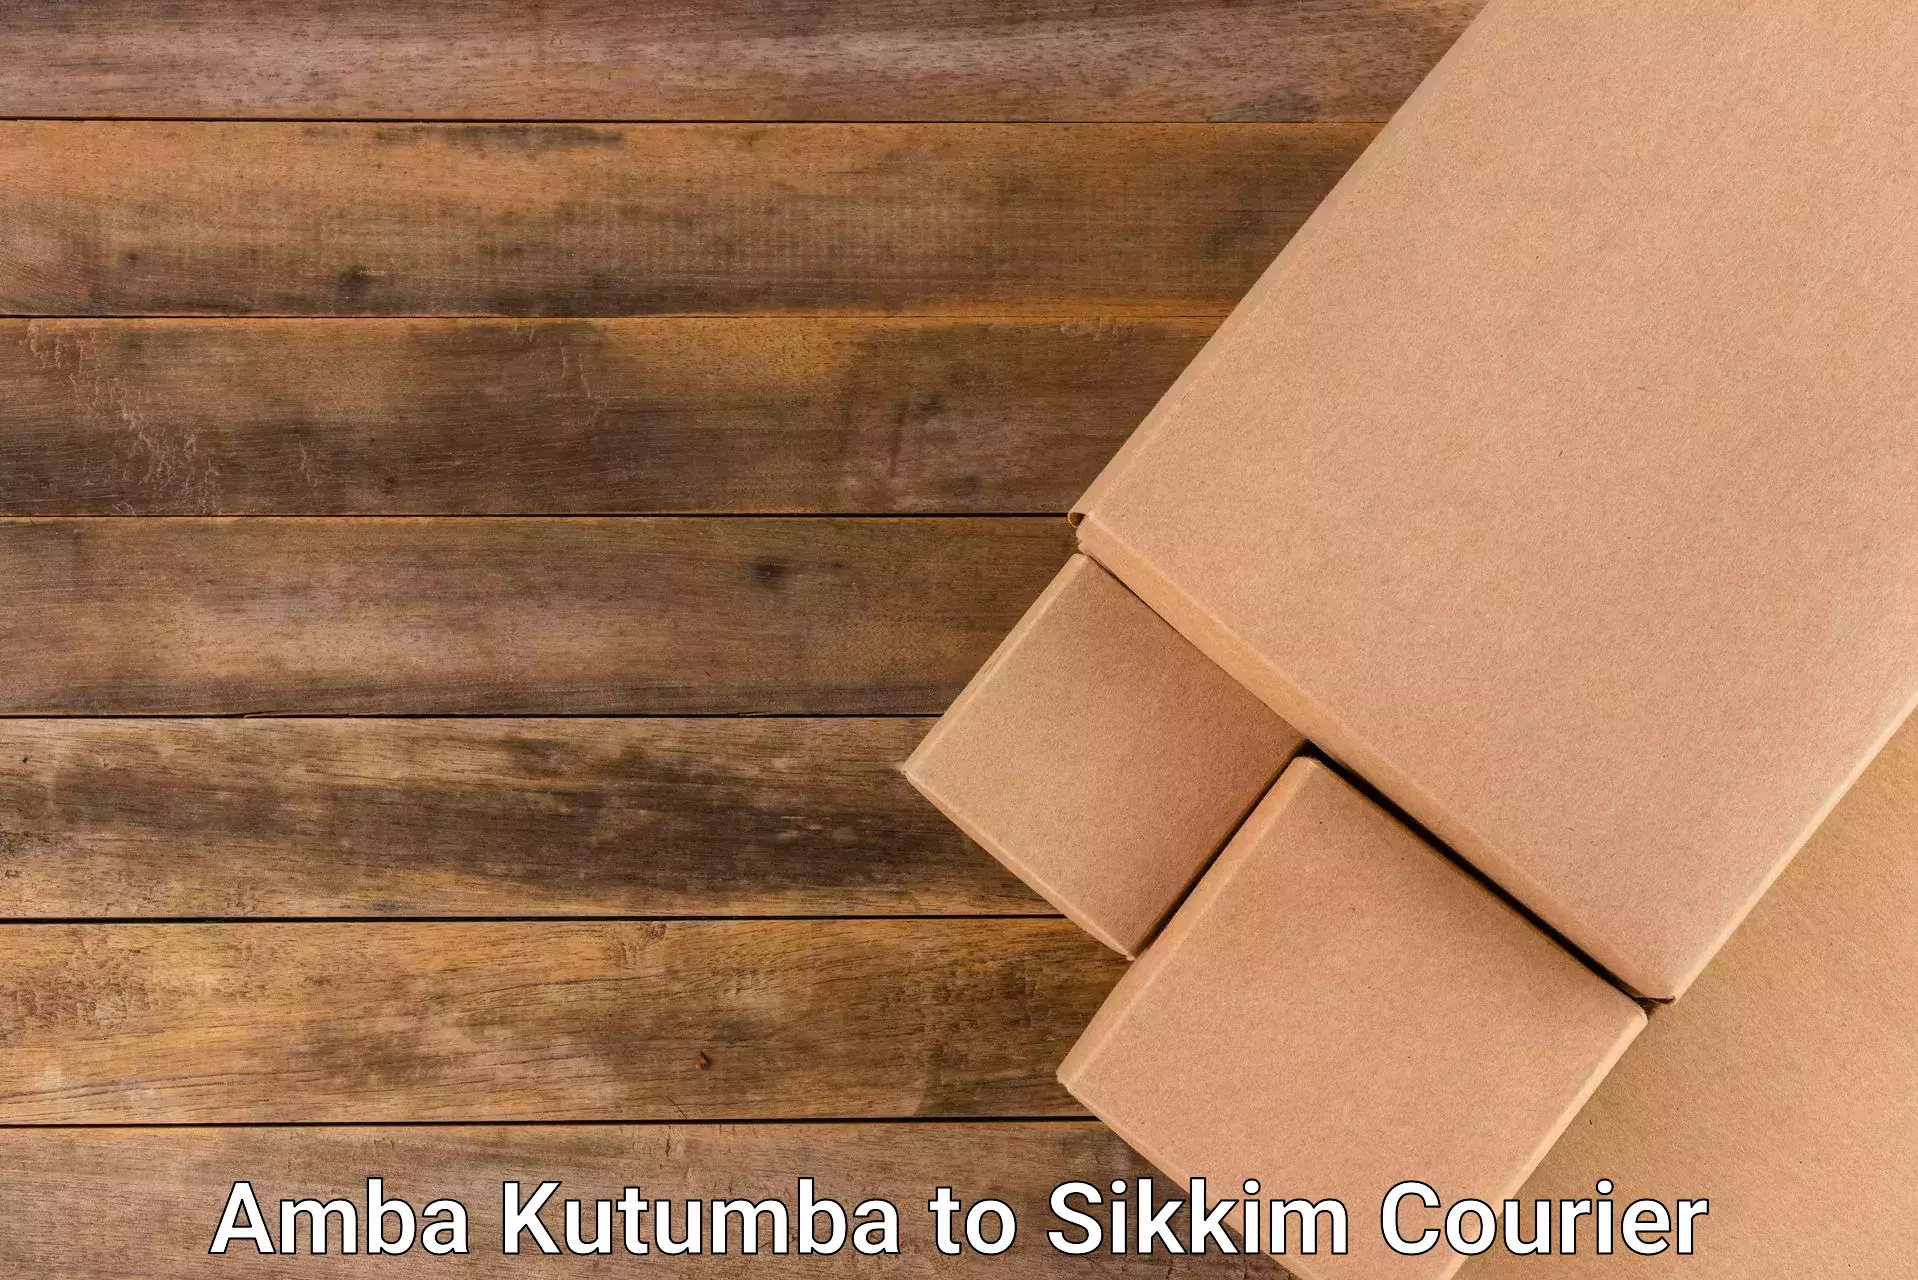 Subscription-based courier Amba Kutumba to Mangan